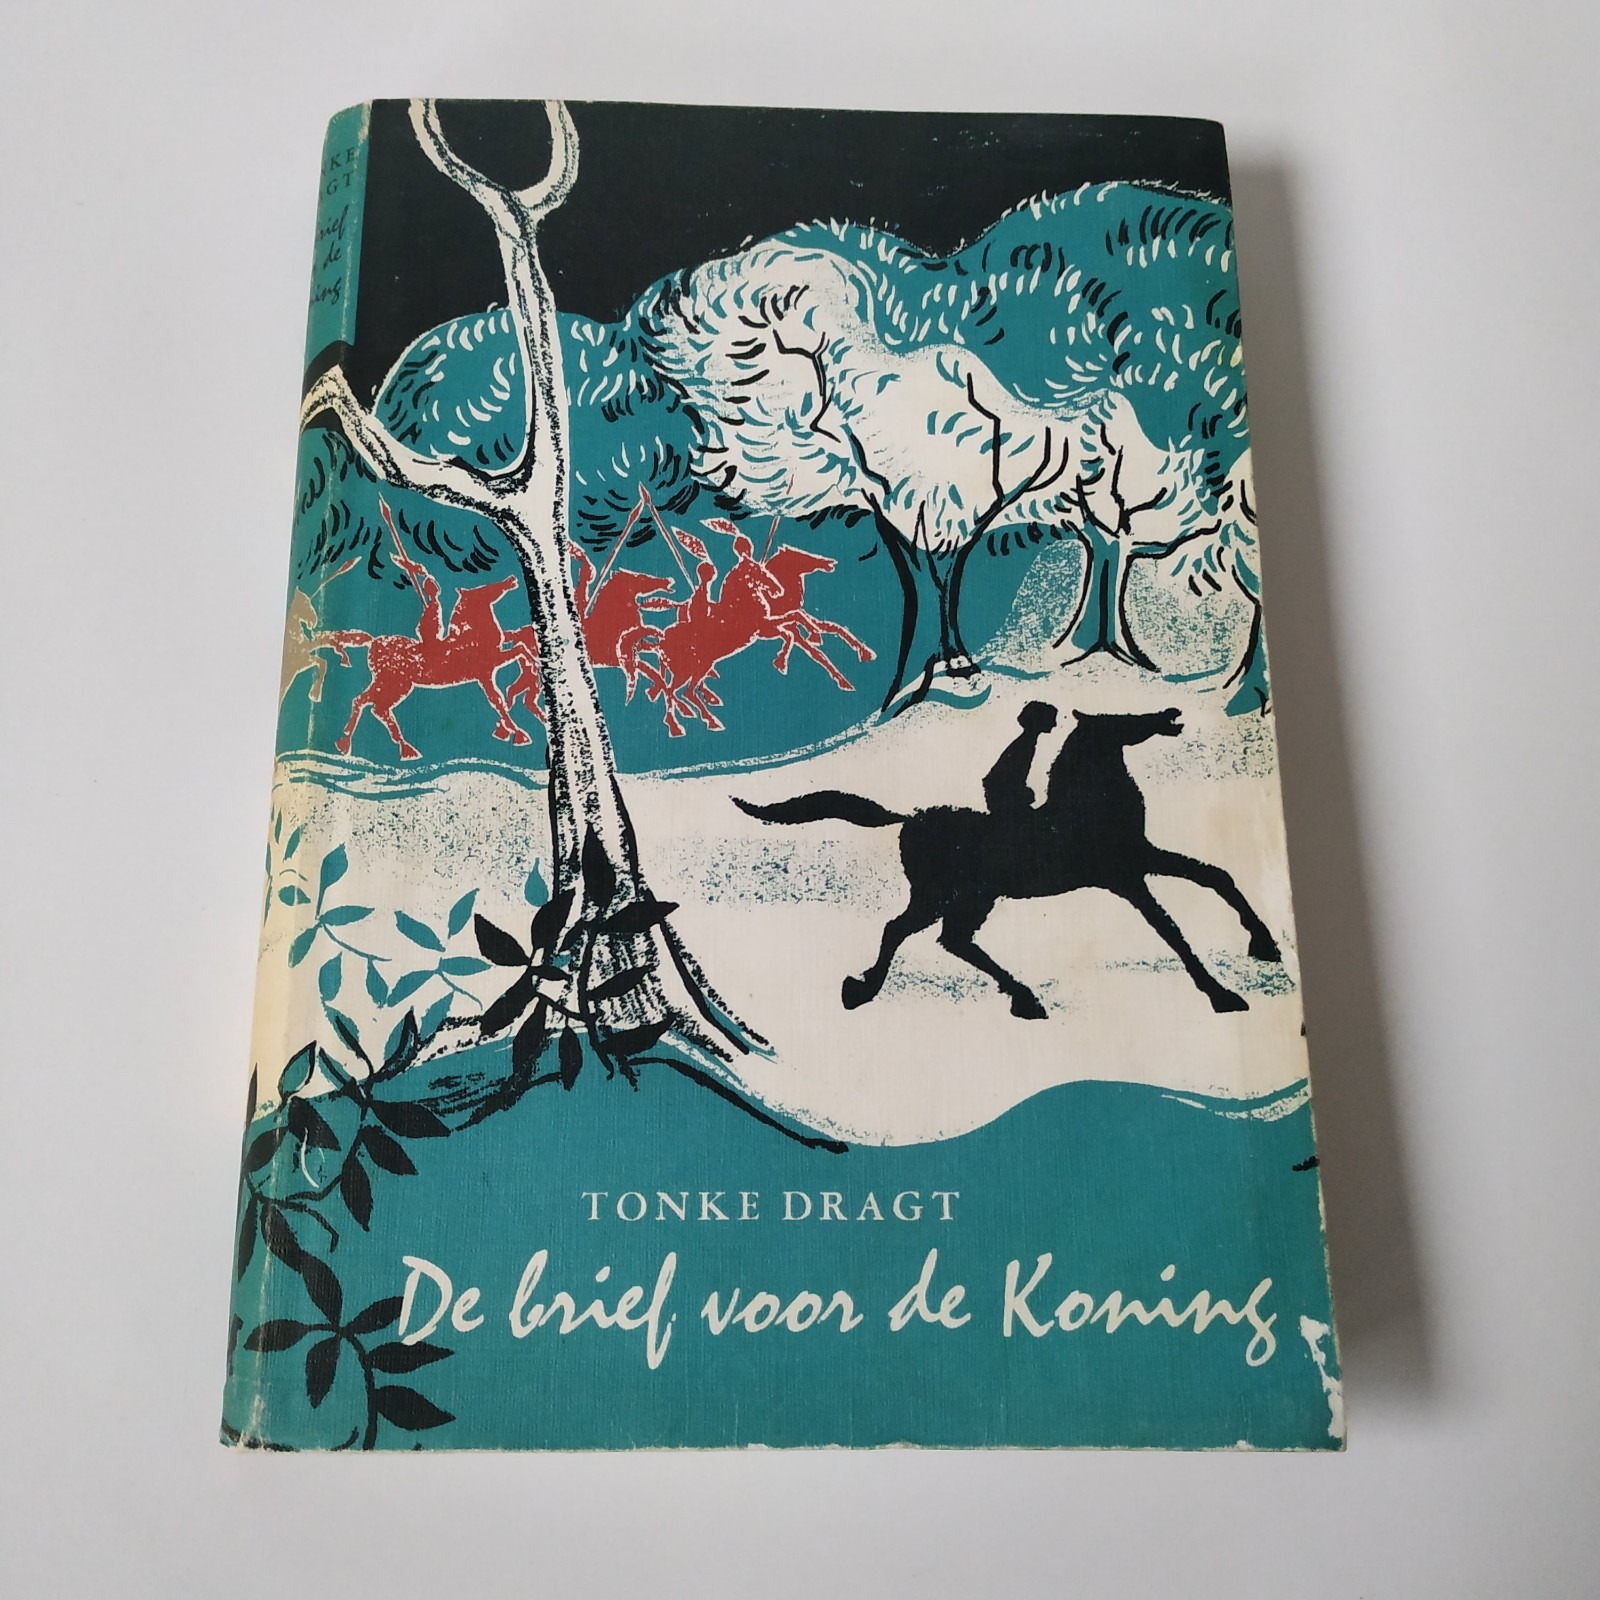 Boek De brief voor de koning – Tonke Dragt – 1980 (1)